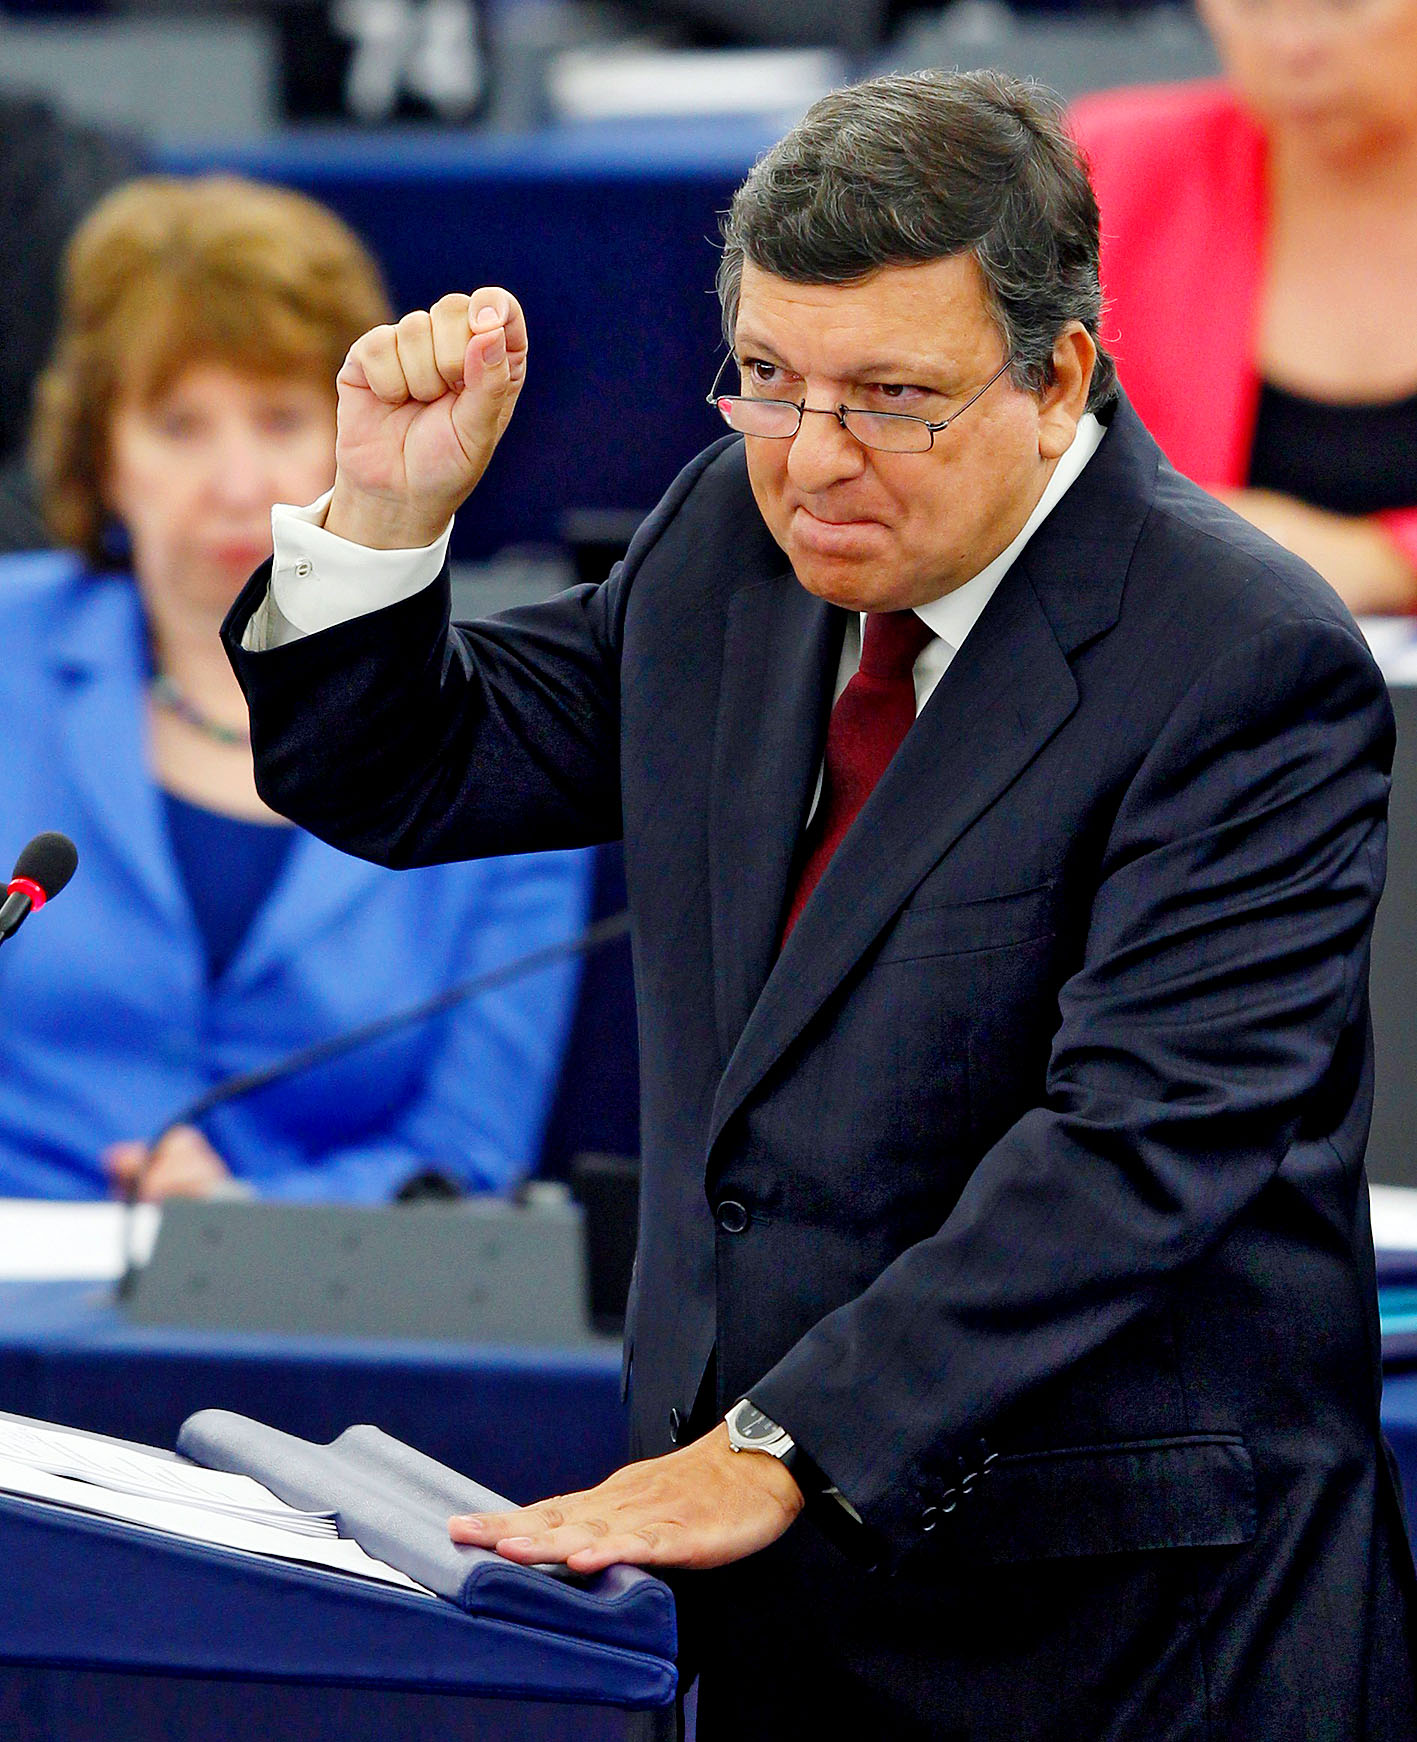 José Manuel Barroso bizottsági elnök az Európai Parlamentben